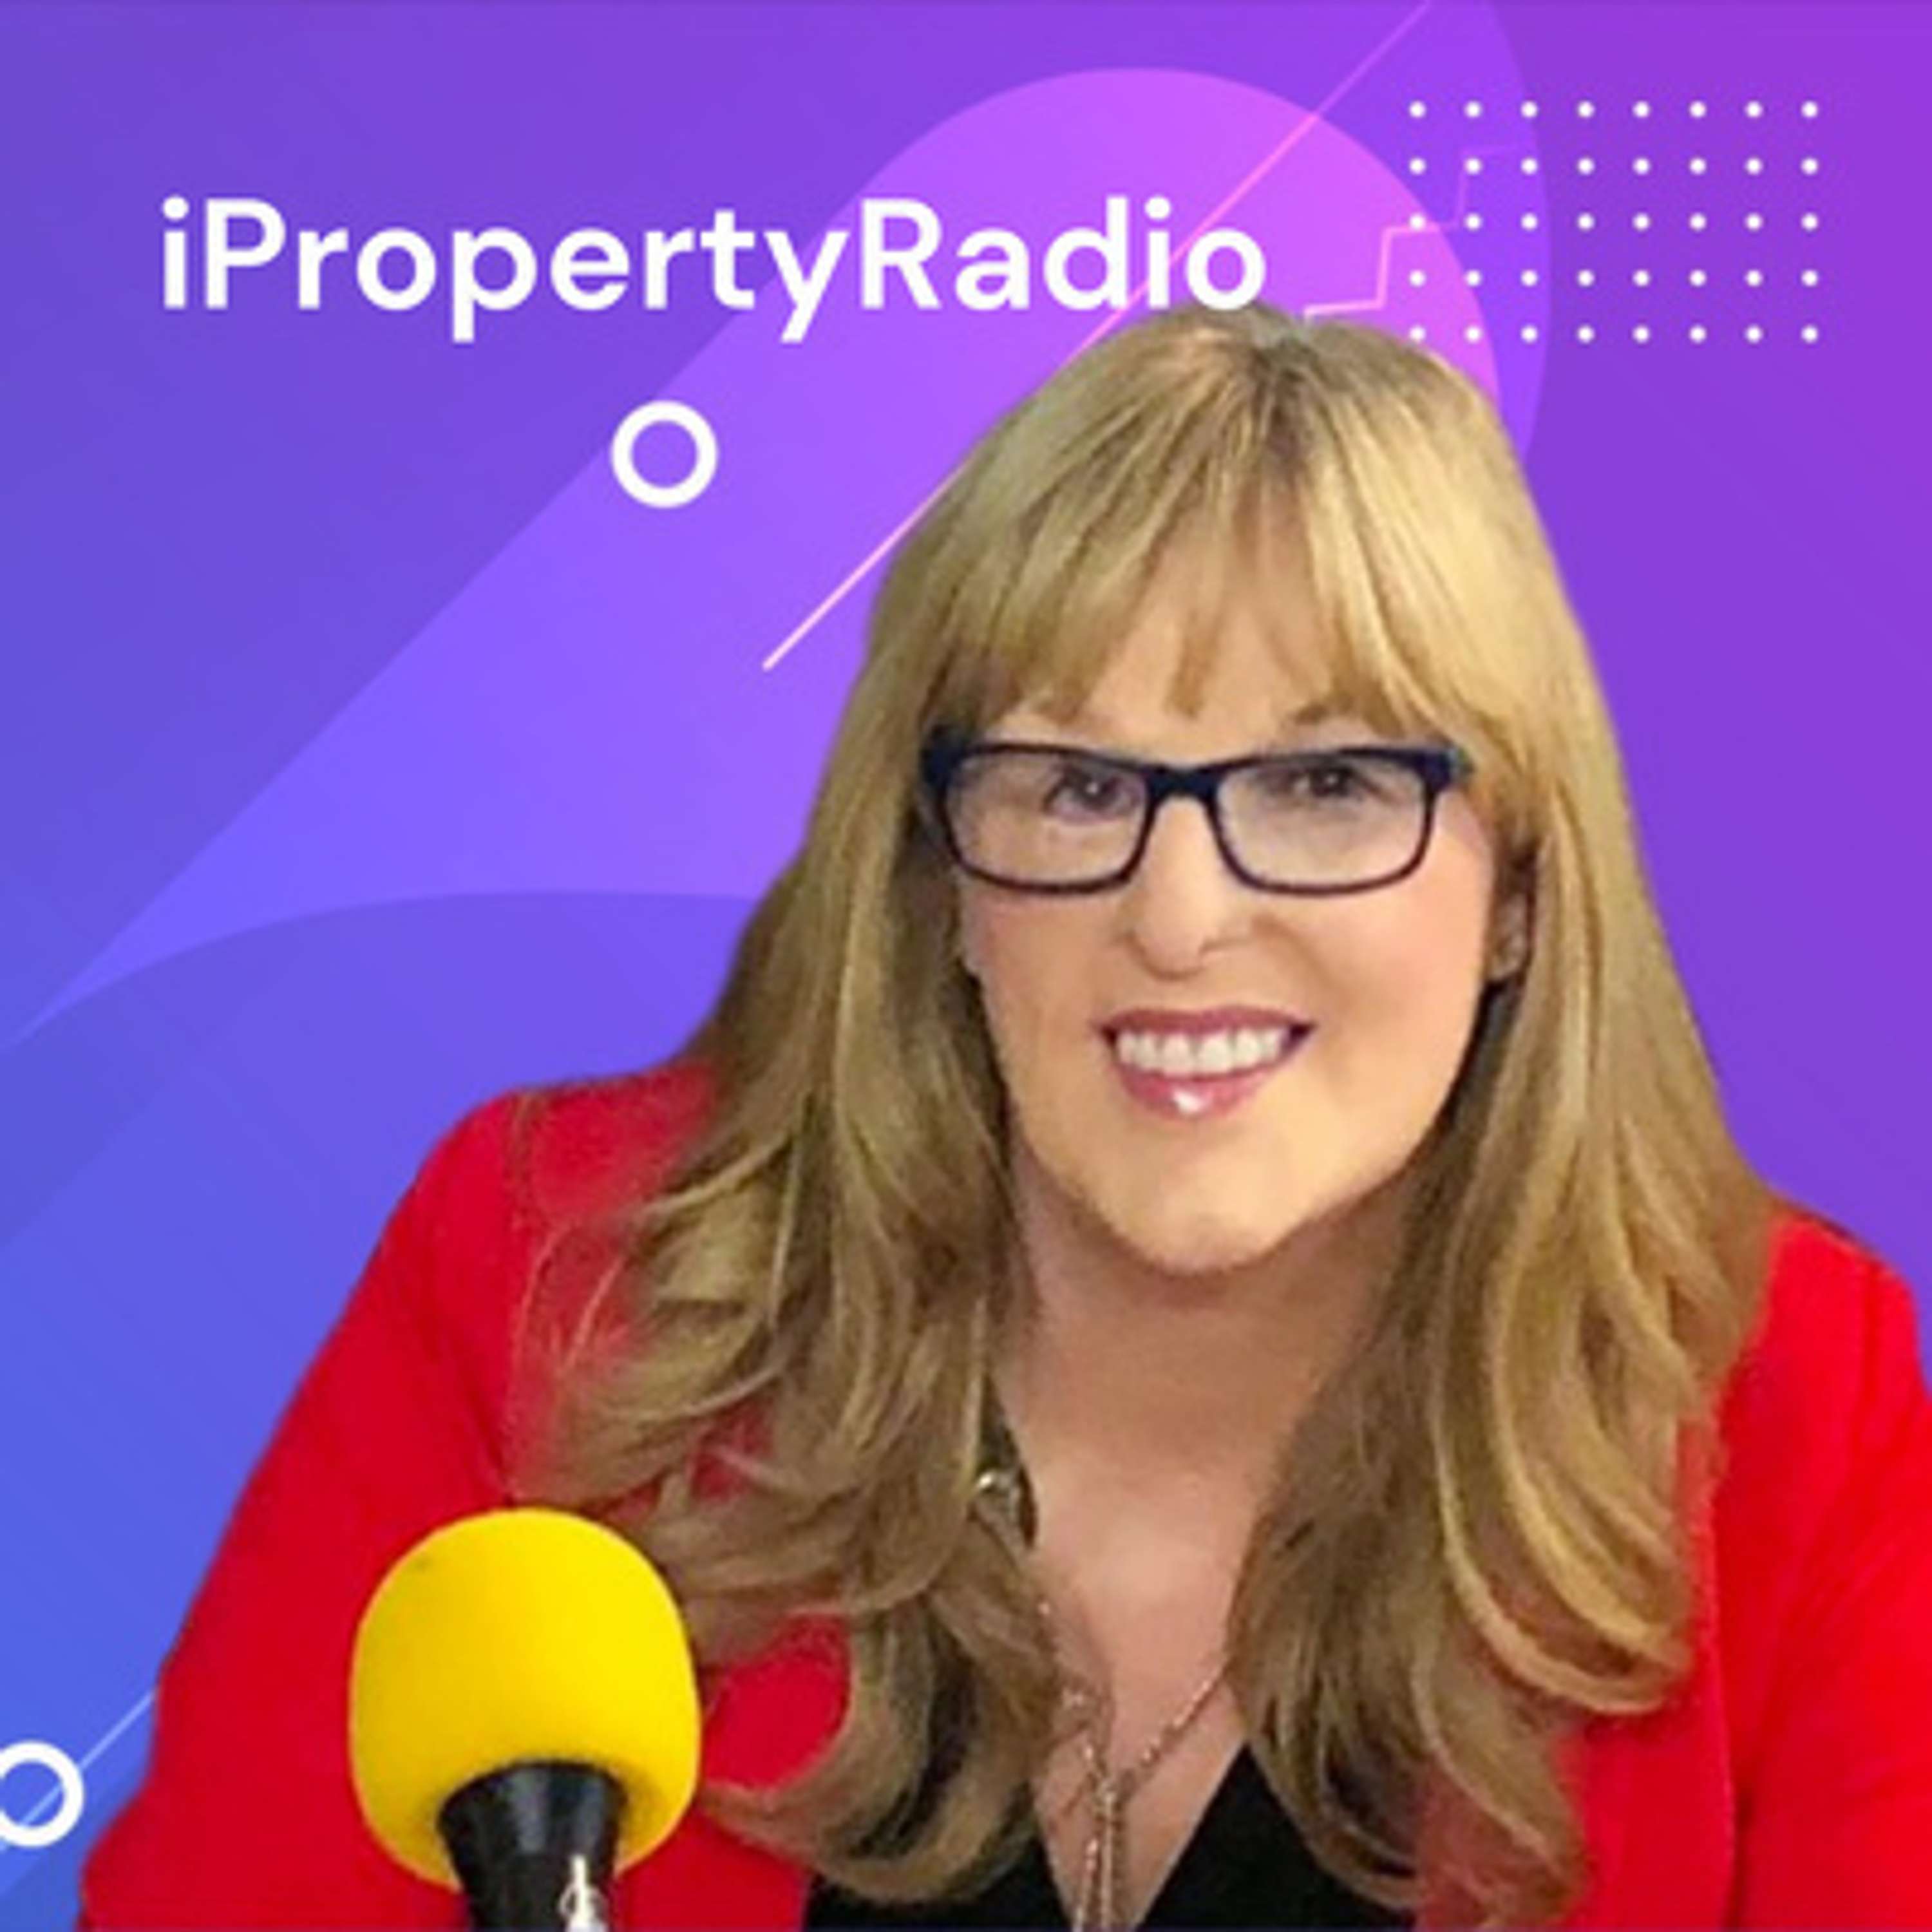 Ep.19 iPropertyRadio: Property Matters, May 28th 2019